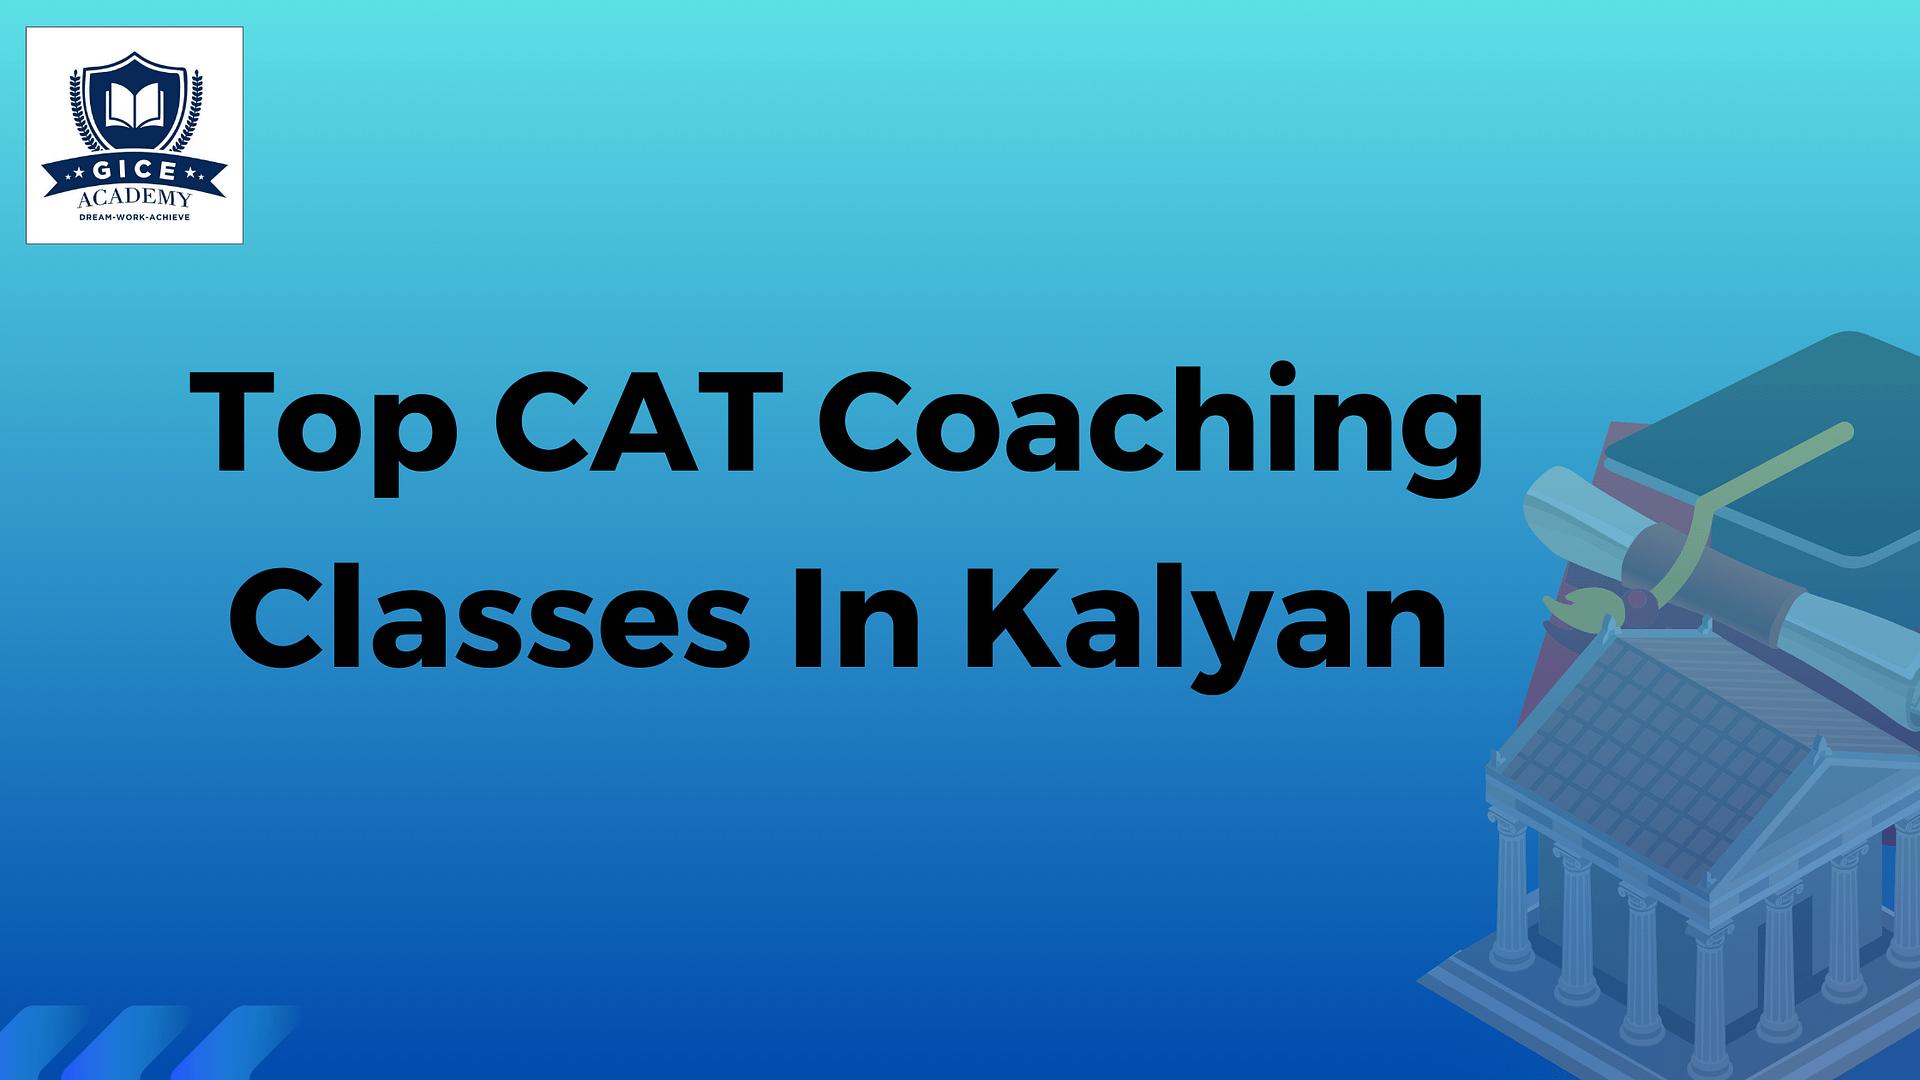 Top CAT Coaching Classes in Kalyan